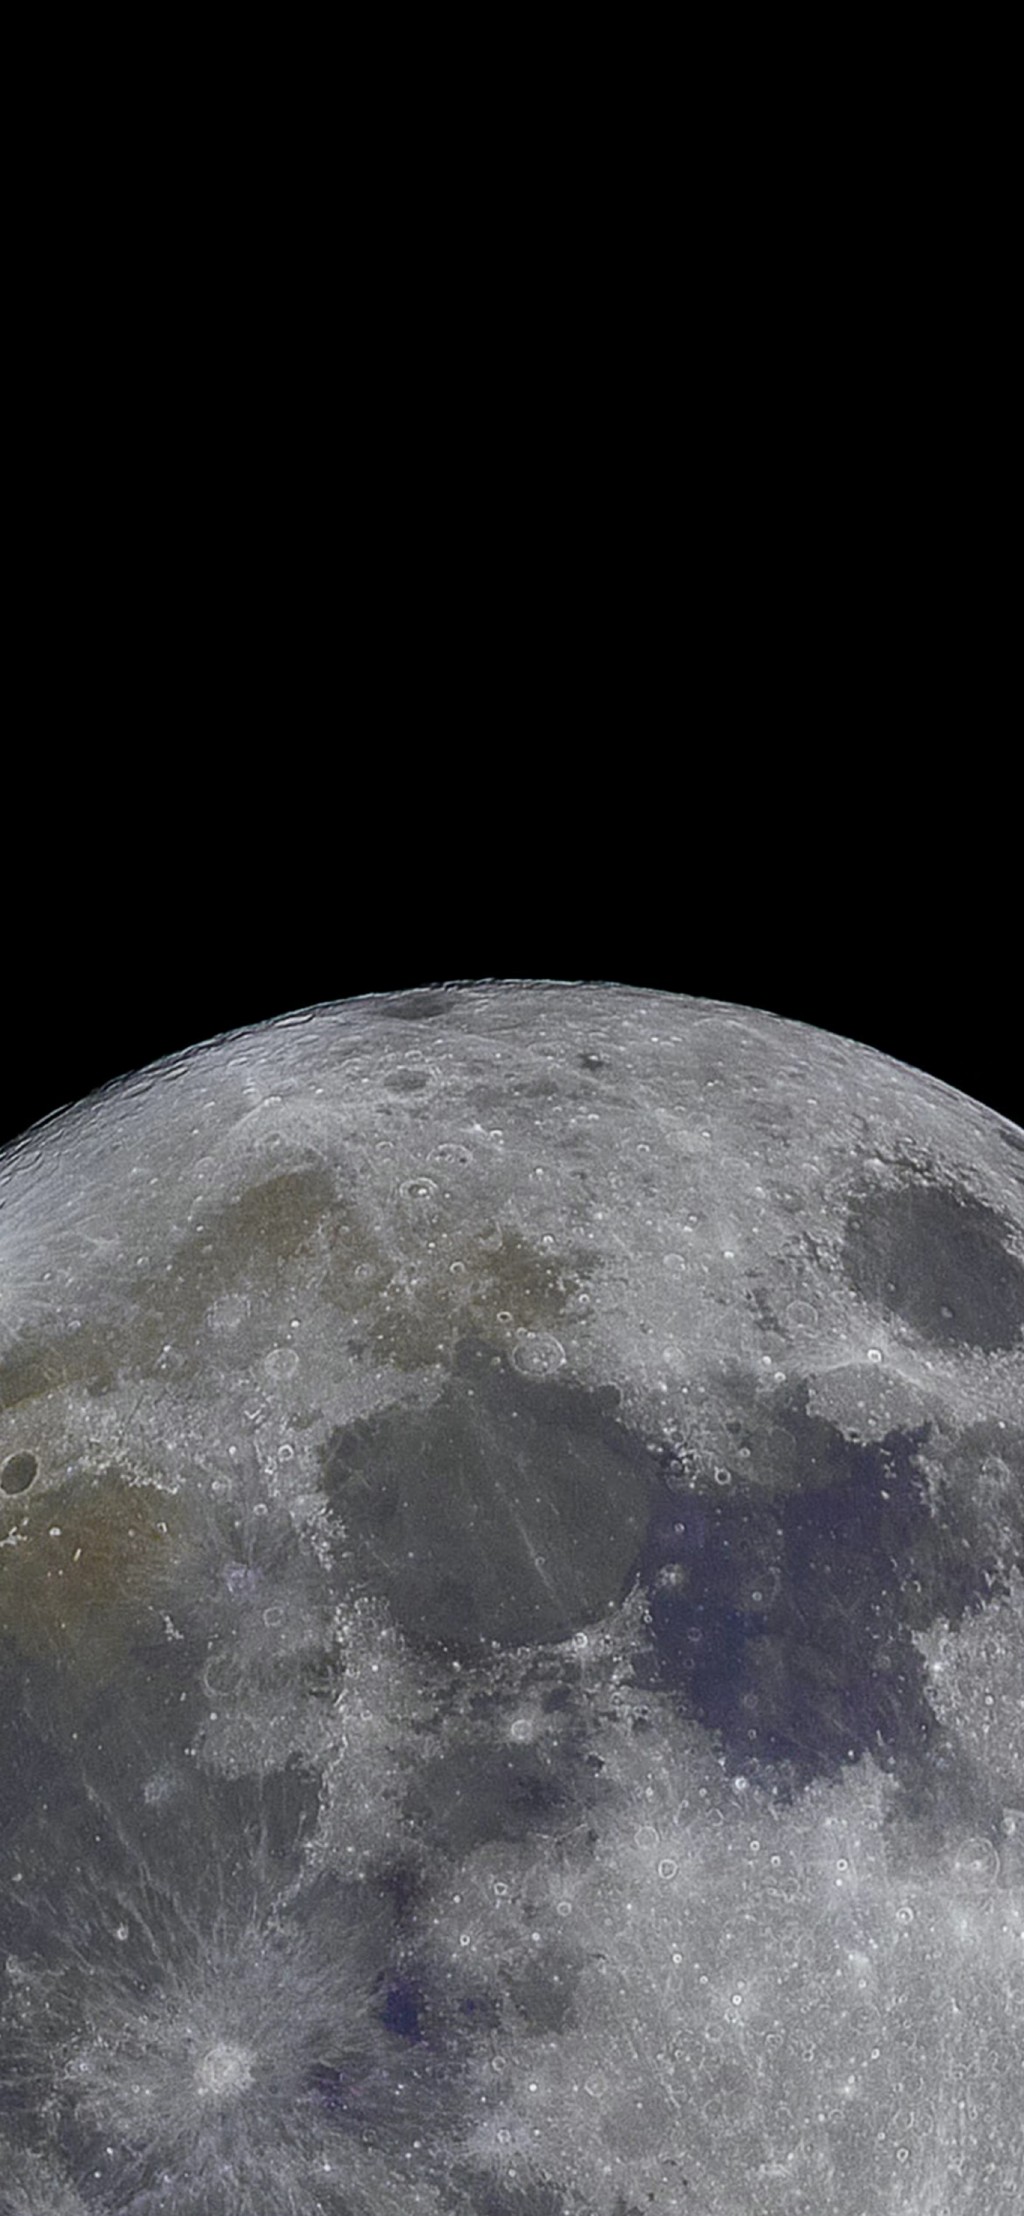 超级月亮风景手机壁纸